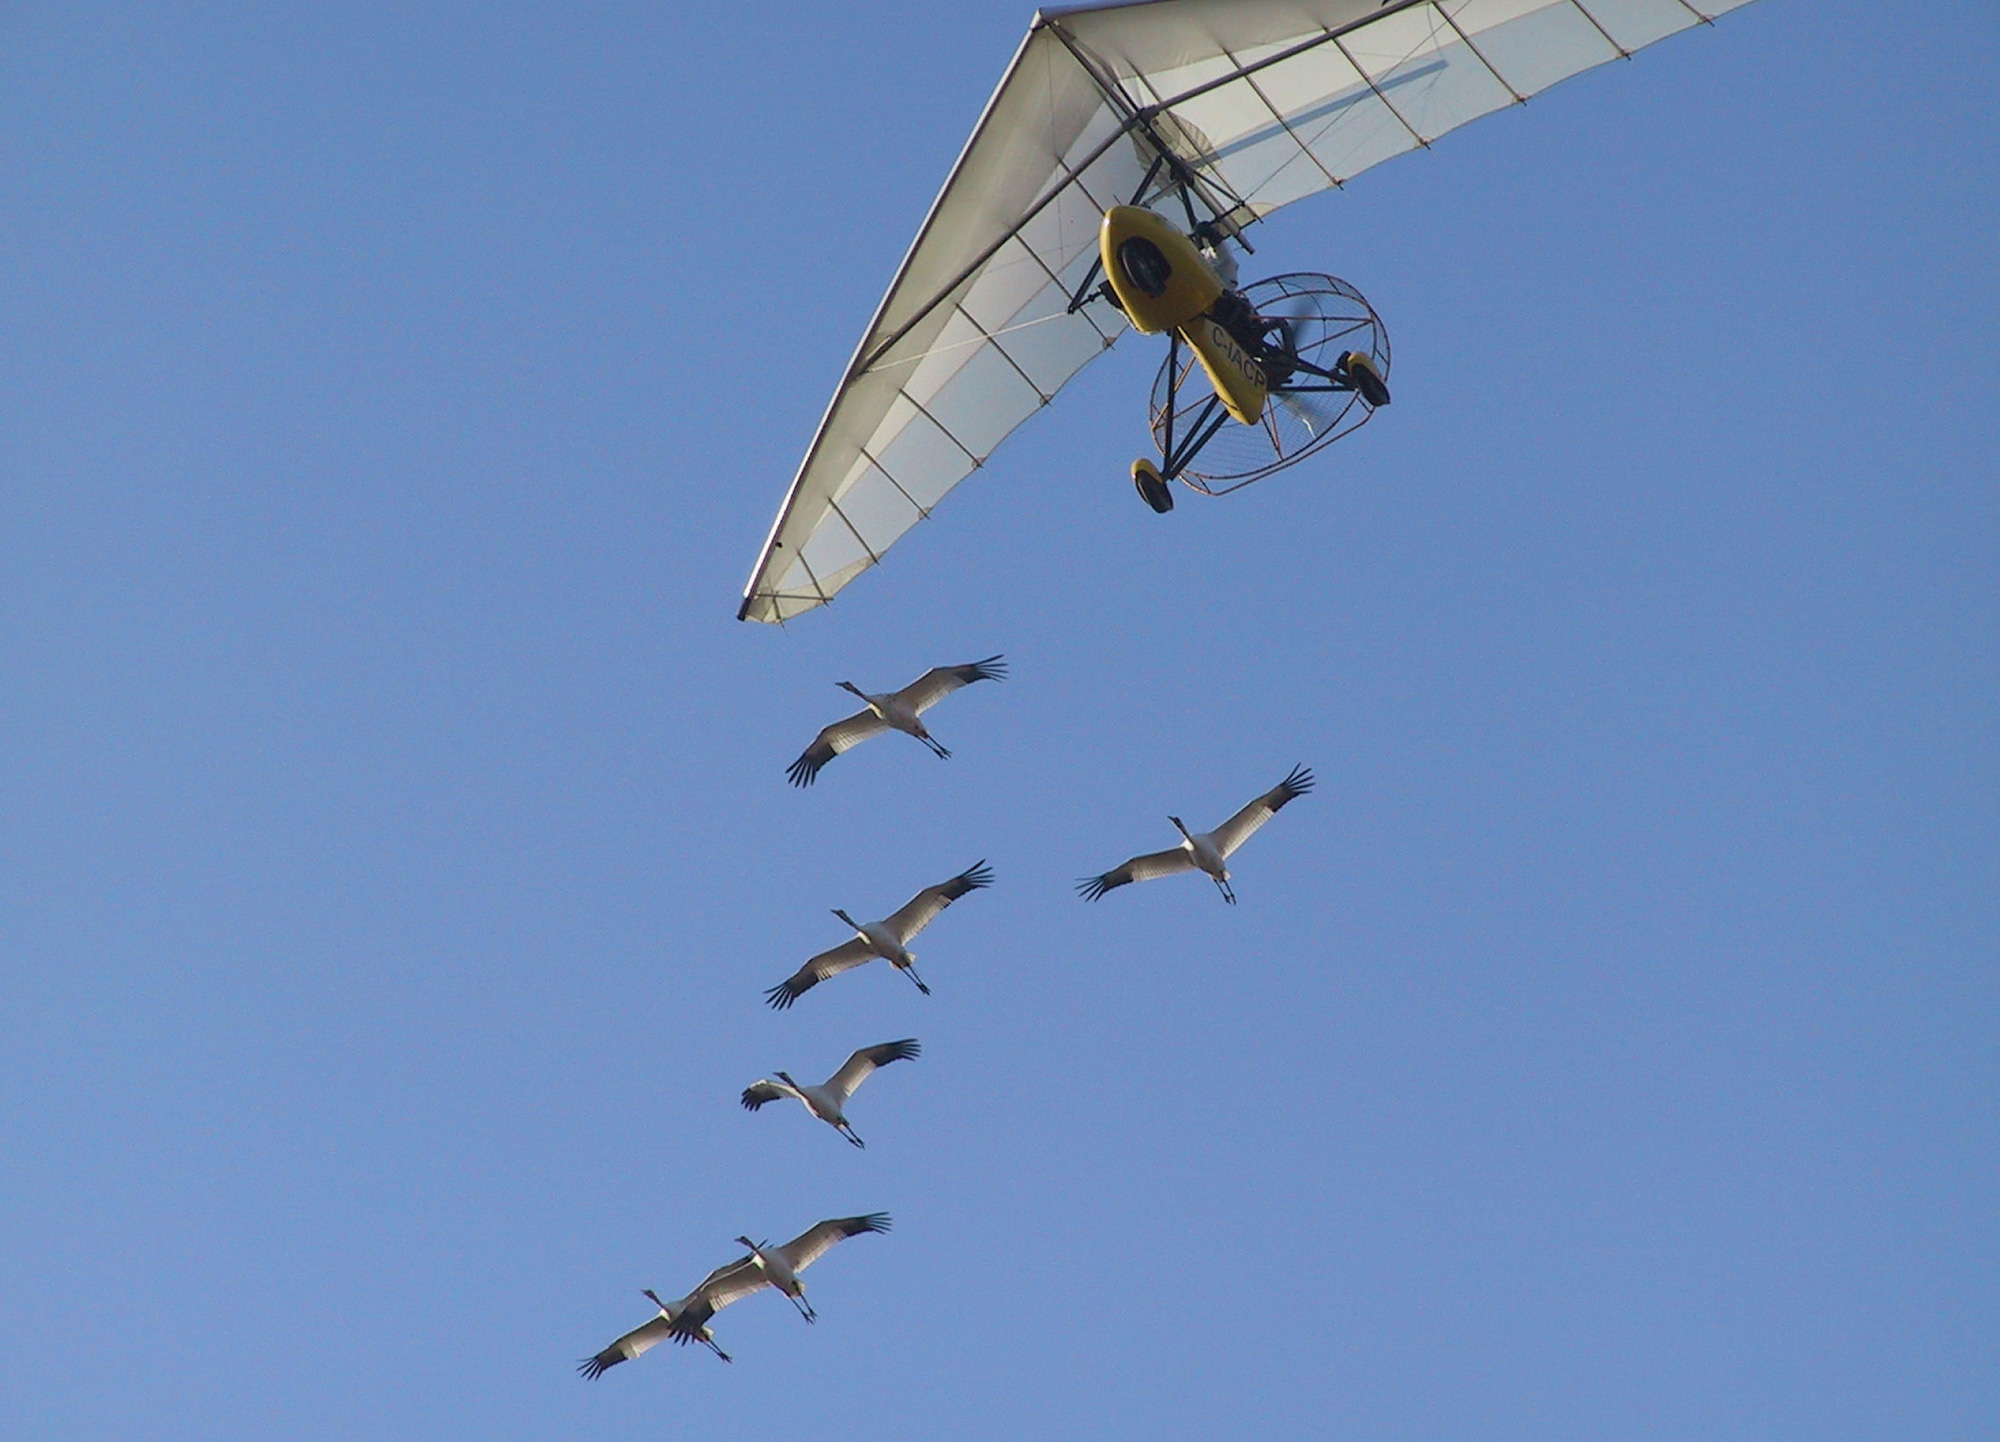 A photograph of cranes flying alongside an ultralight aircraft.